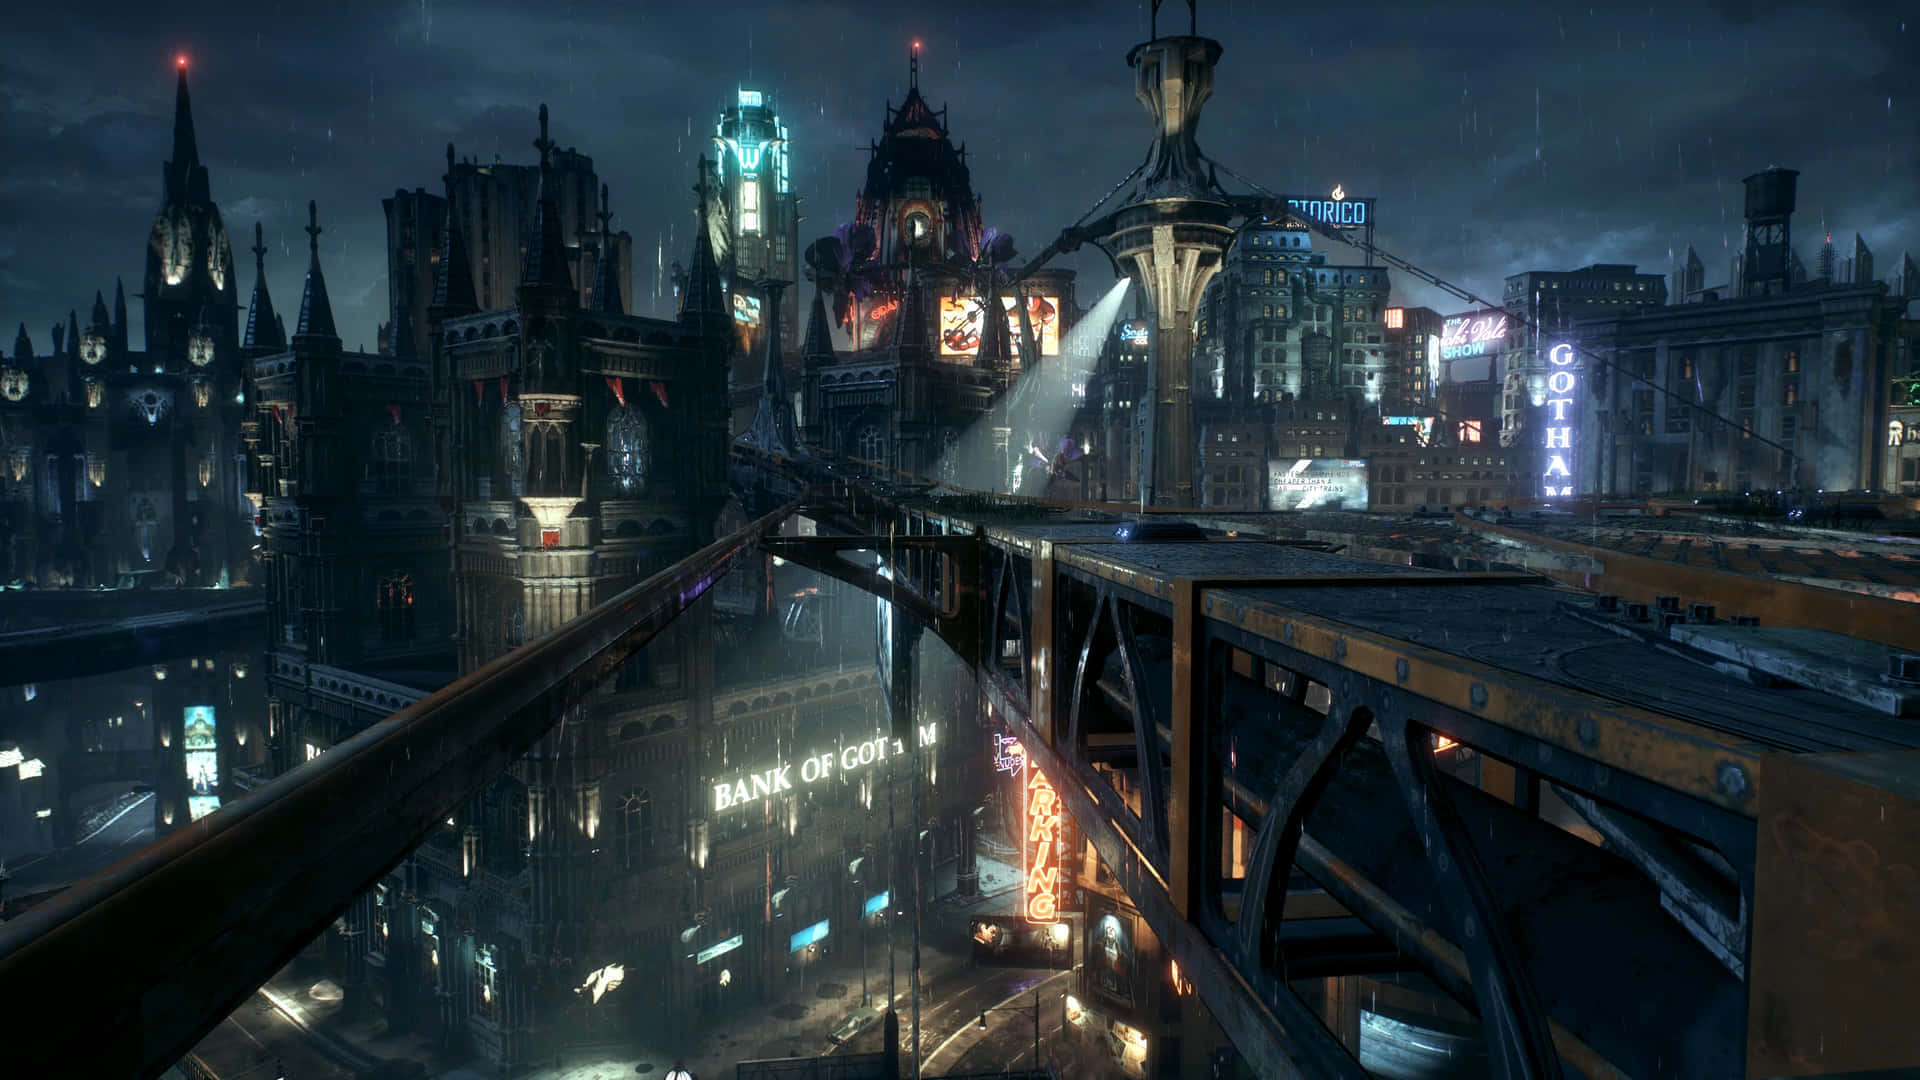 Hintergrundbildvon Gotham City Mit Einer Auflösung Von 1920 X 1080